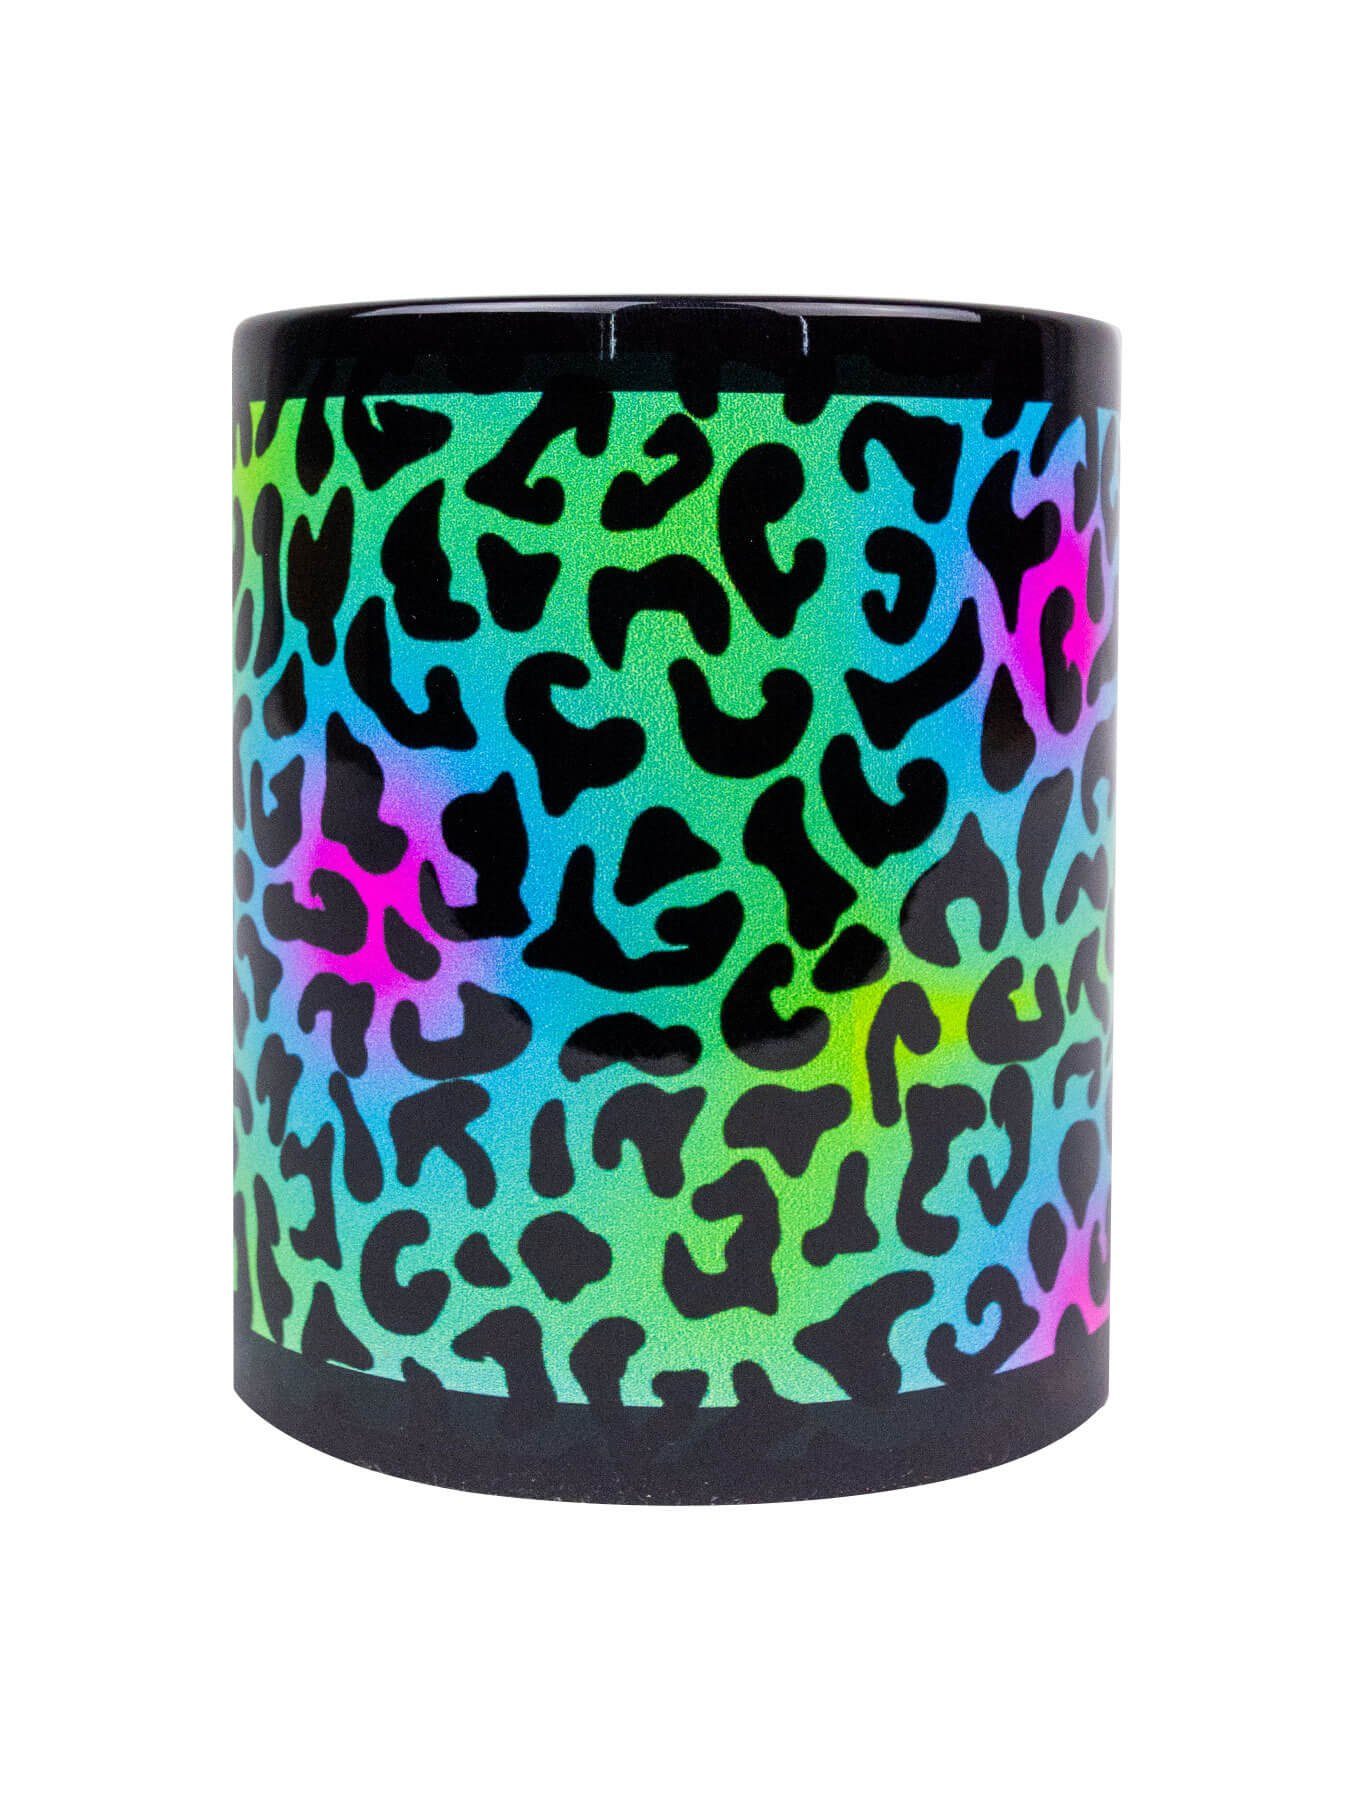 Super günstig! PSYWORK Tasse Keramik, "Animal Fluo unter Leopard", Tasse Motiv Cup UV-aktiv, Print leuchtet Neon Schwarzlicht